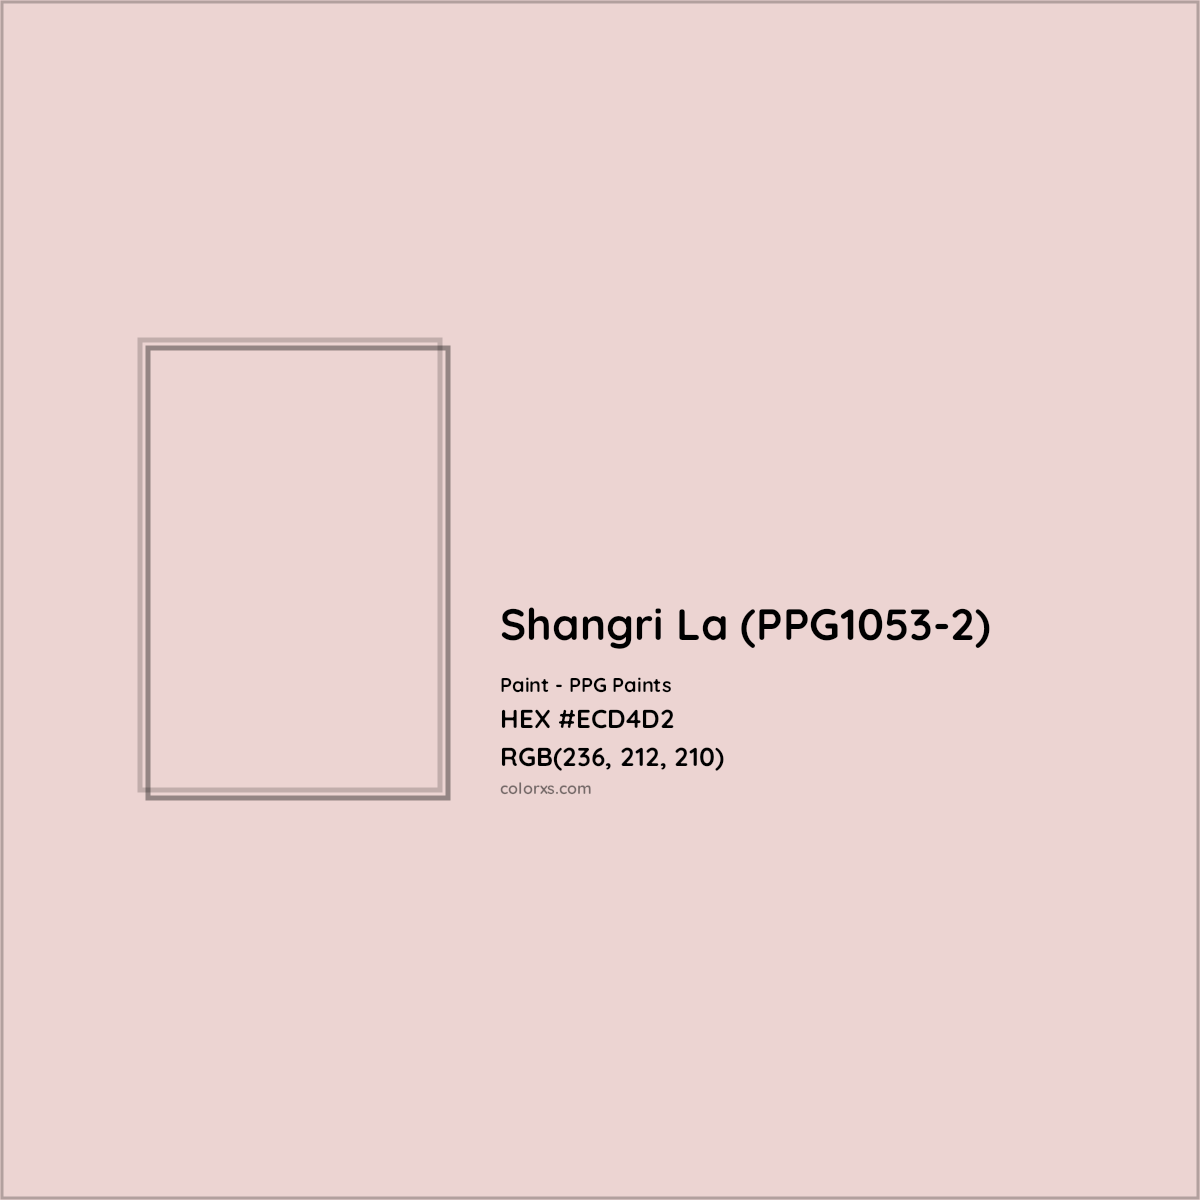 HEX #ECD4D2 Shangri La (PPG1053-2) Paint PPG Paints - Color Code